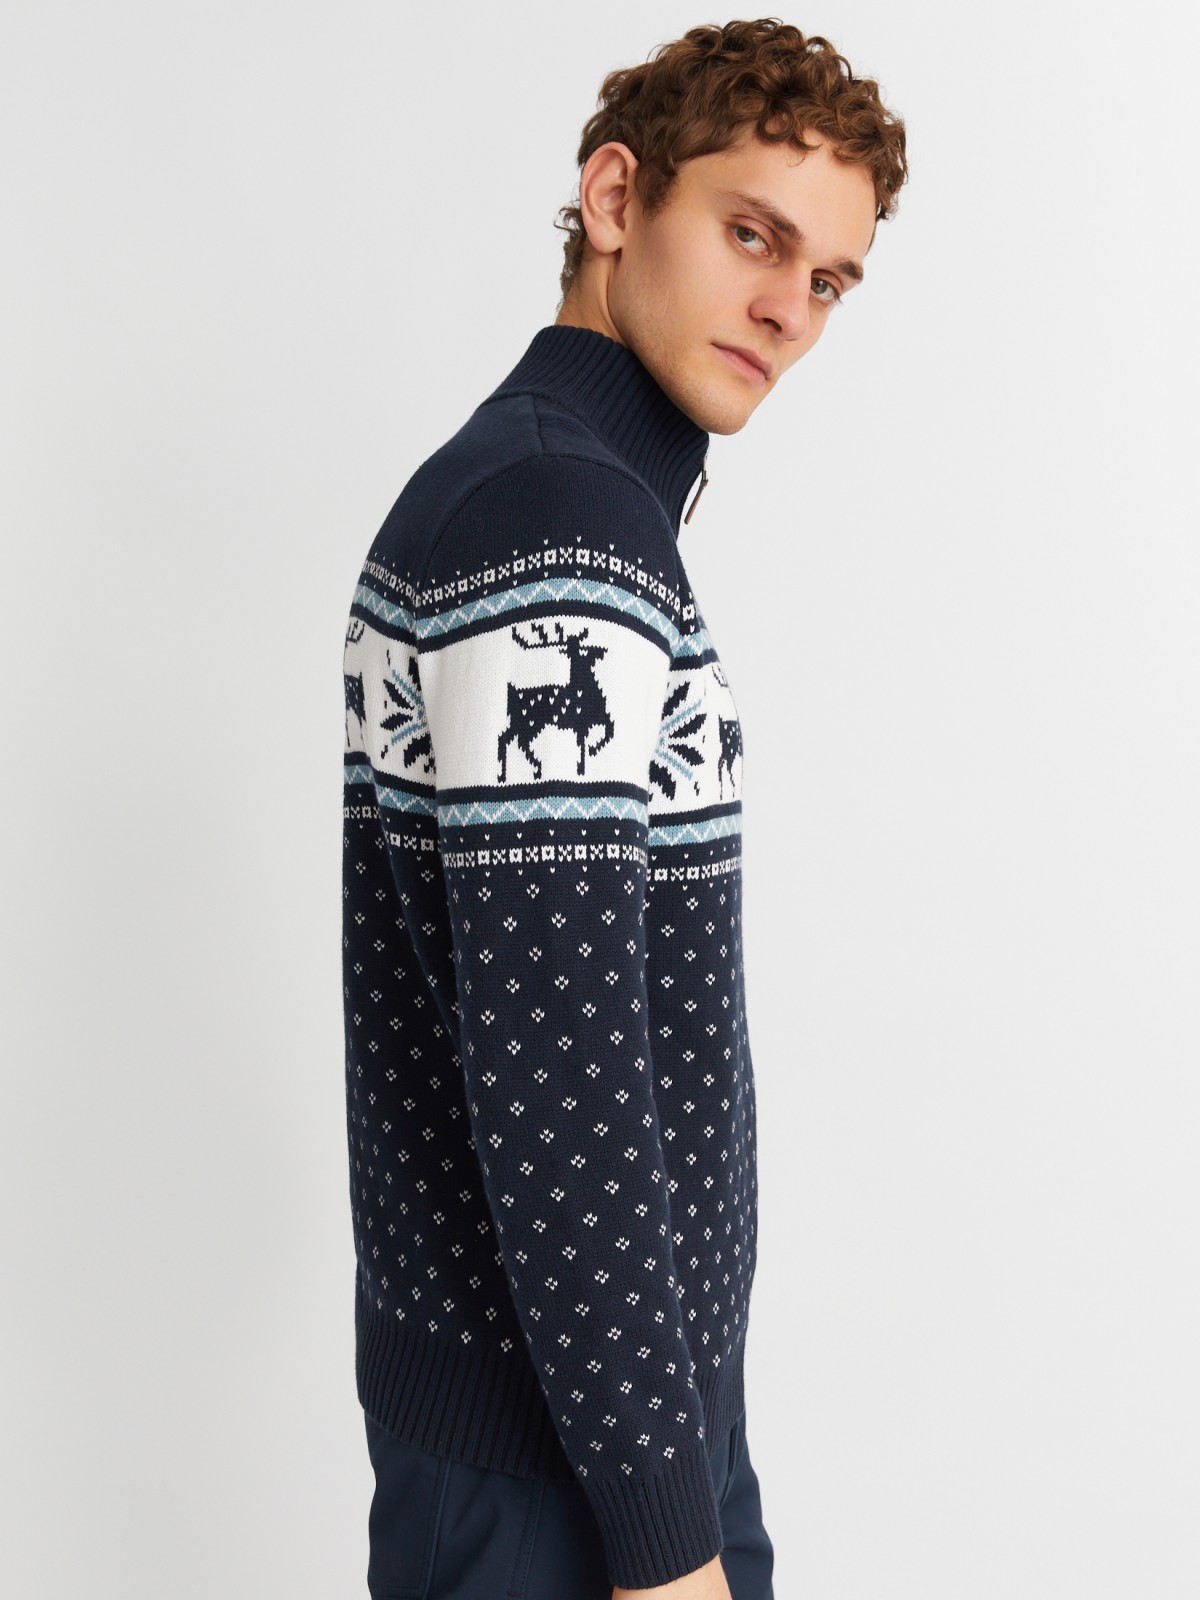 Вязаный свитер с воротником на молнии и скандинавским узором zolla 013436823043, цвет синий, размер M - фото 3